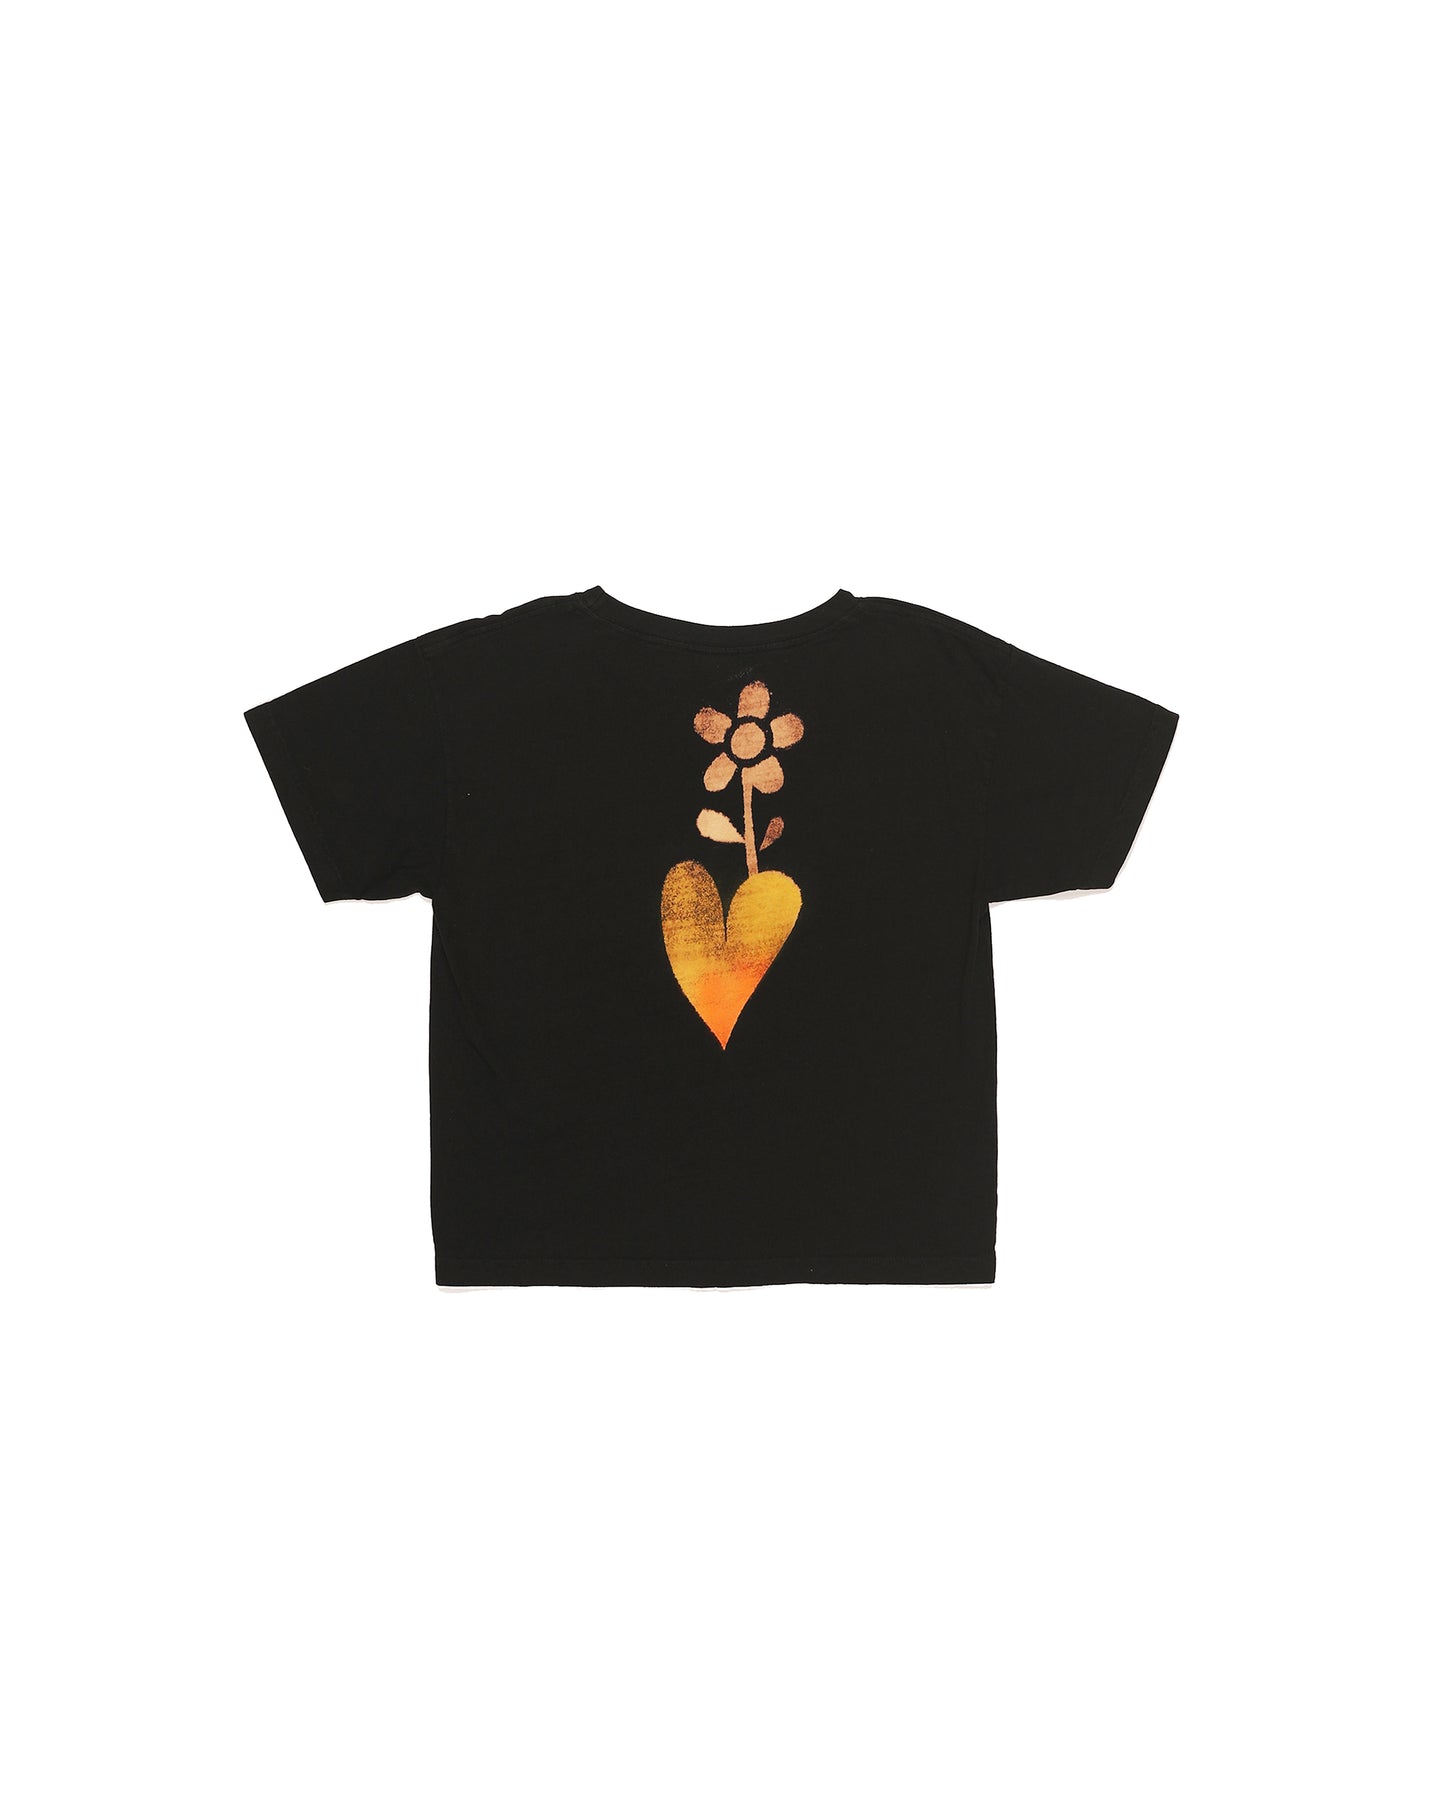 Short Sleeve T-shirt - AP #05 "flower heart" Medium